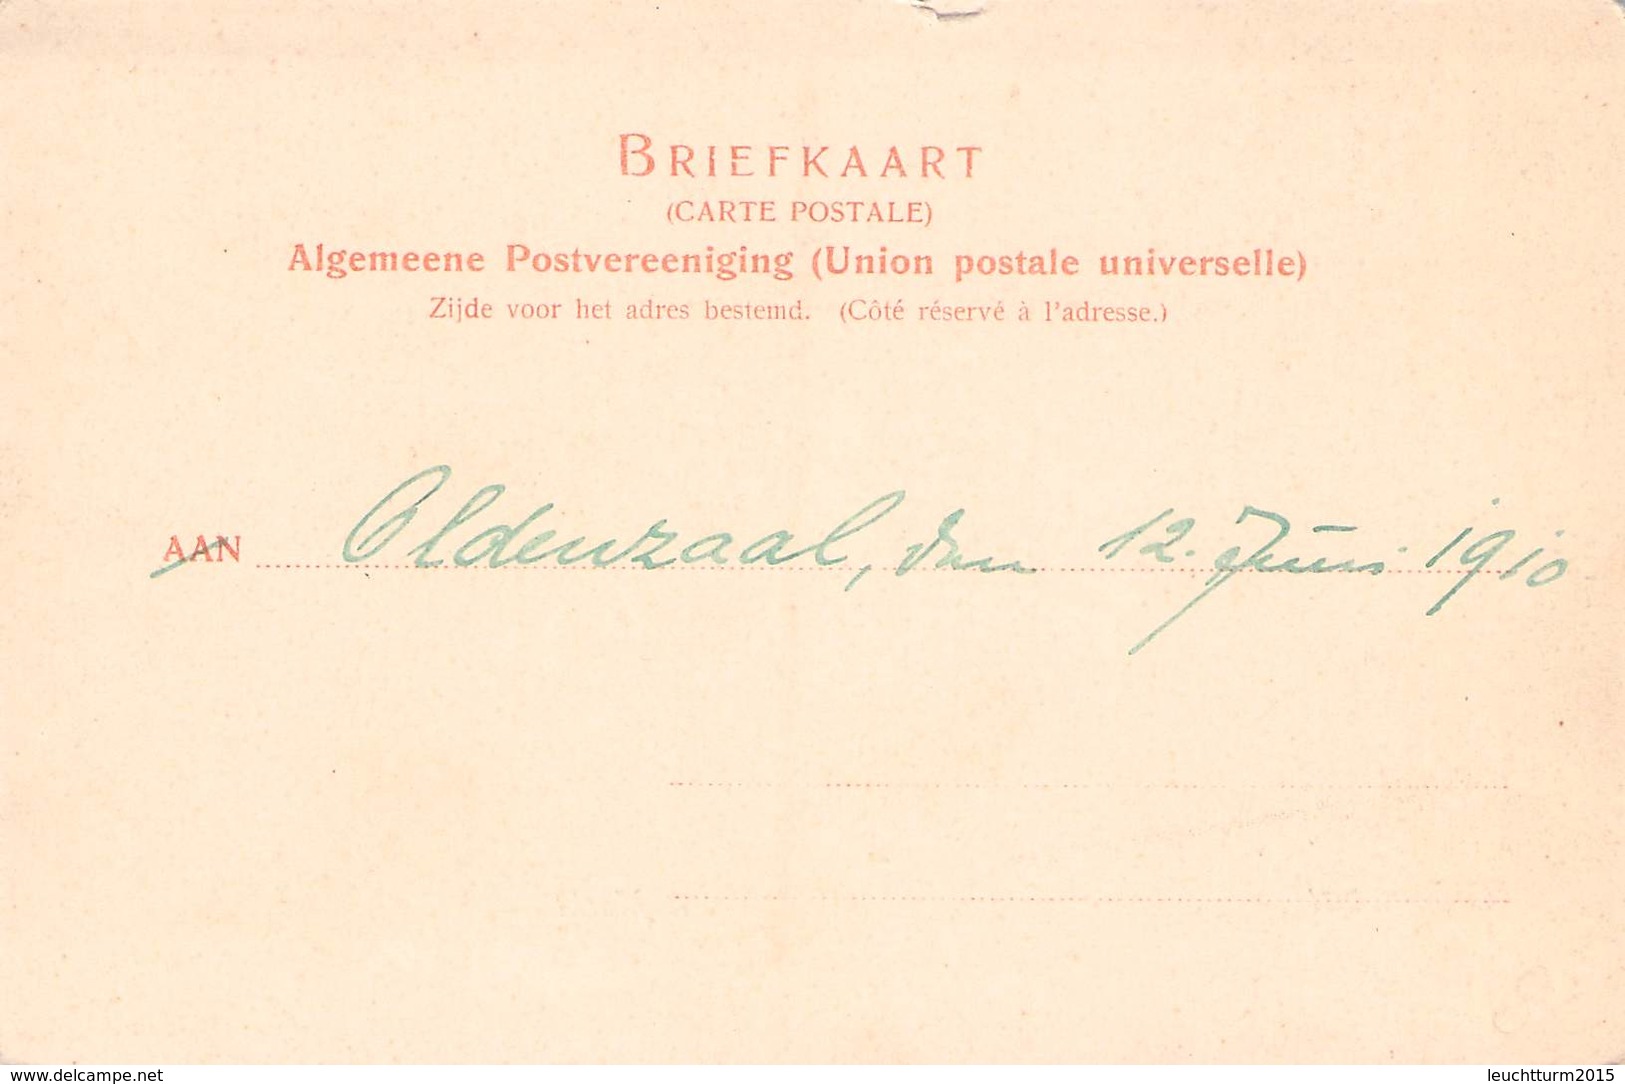 OLDENZAAL - MARKT 1910 / Ak 81 - Hengelo (Ov)